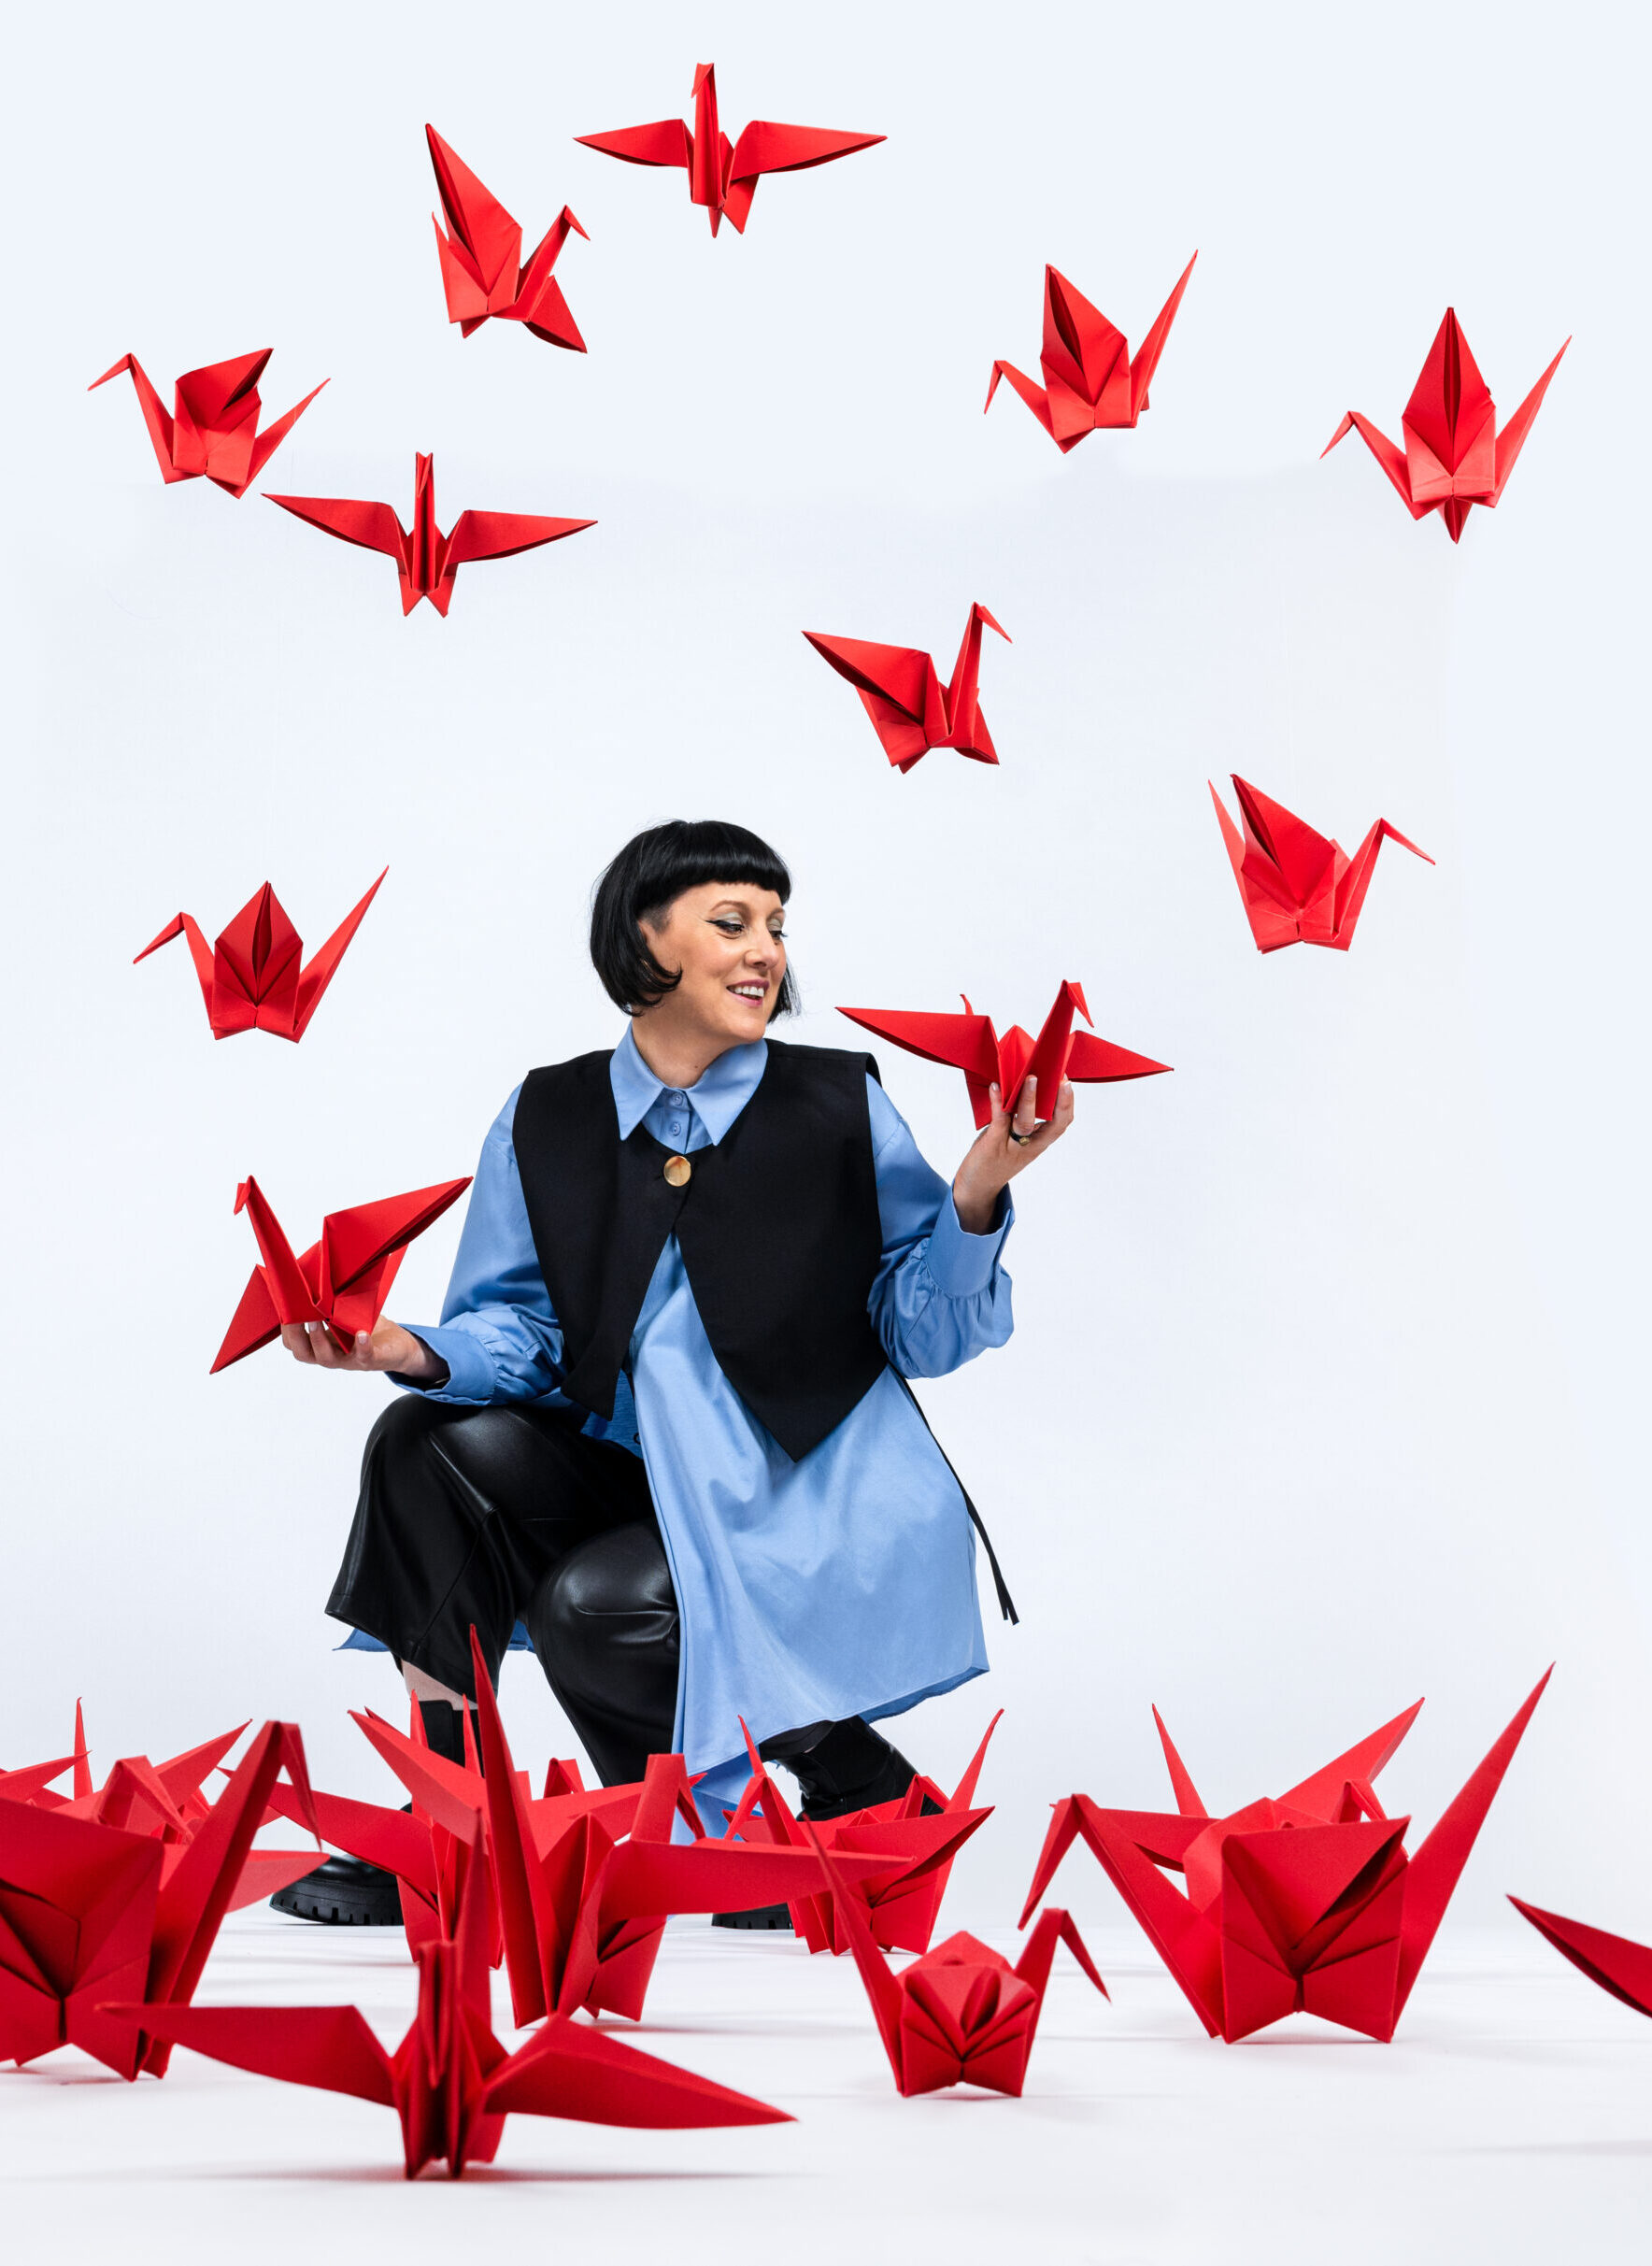 vrouw omringd met rode papieren kraanvogels